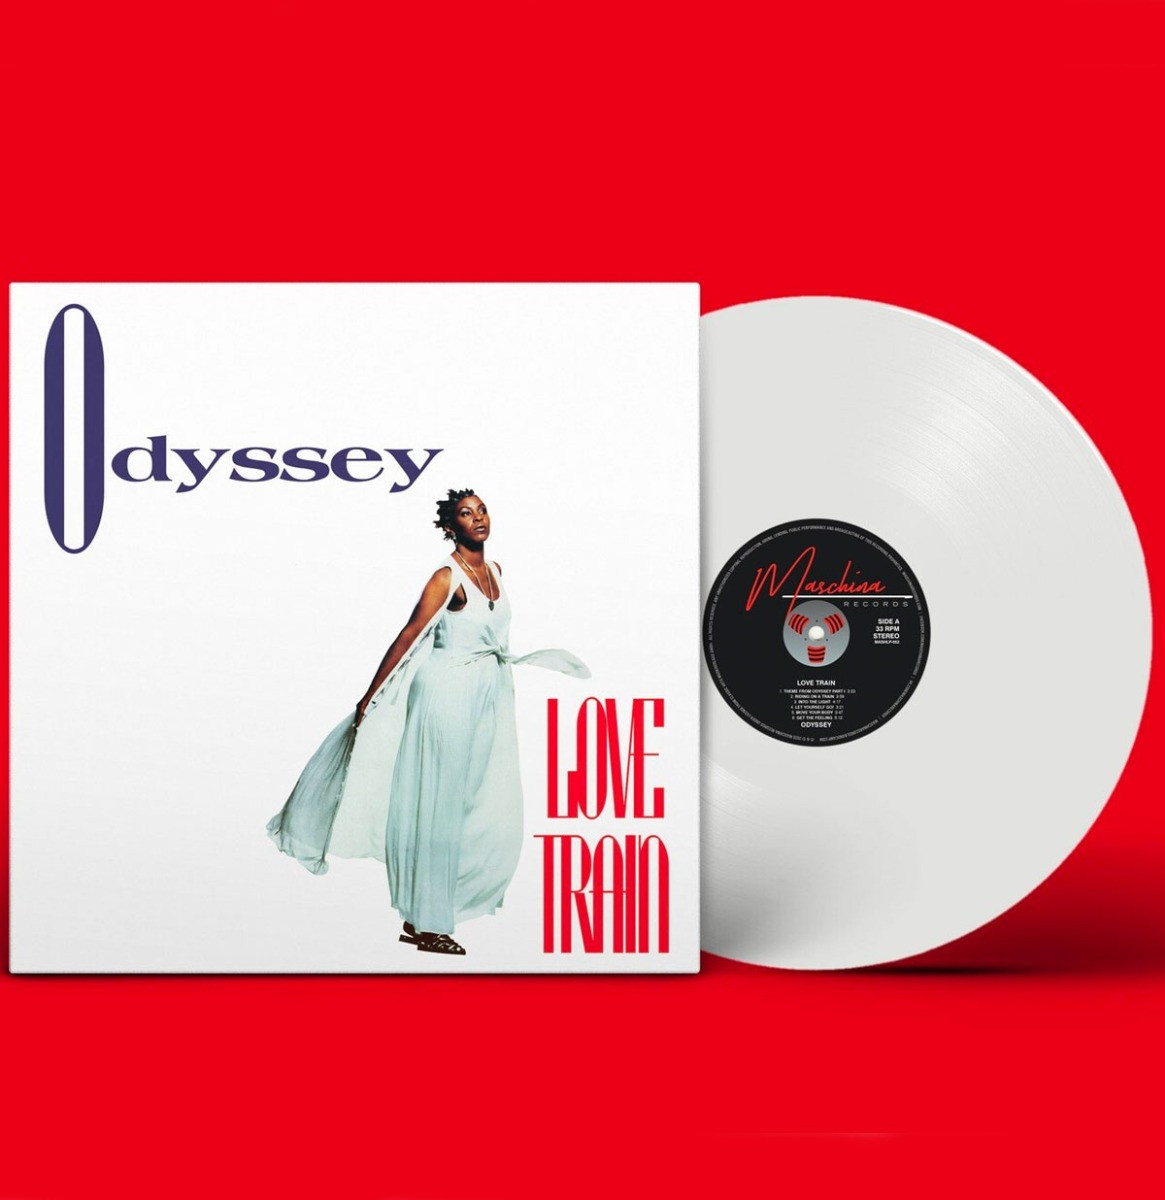 Odyssey - Love Train LP (Wit Vinyl) ZEER GELIMITEERD